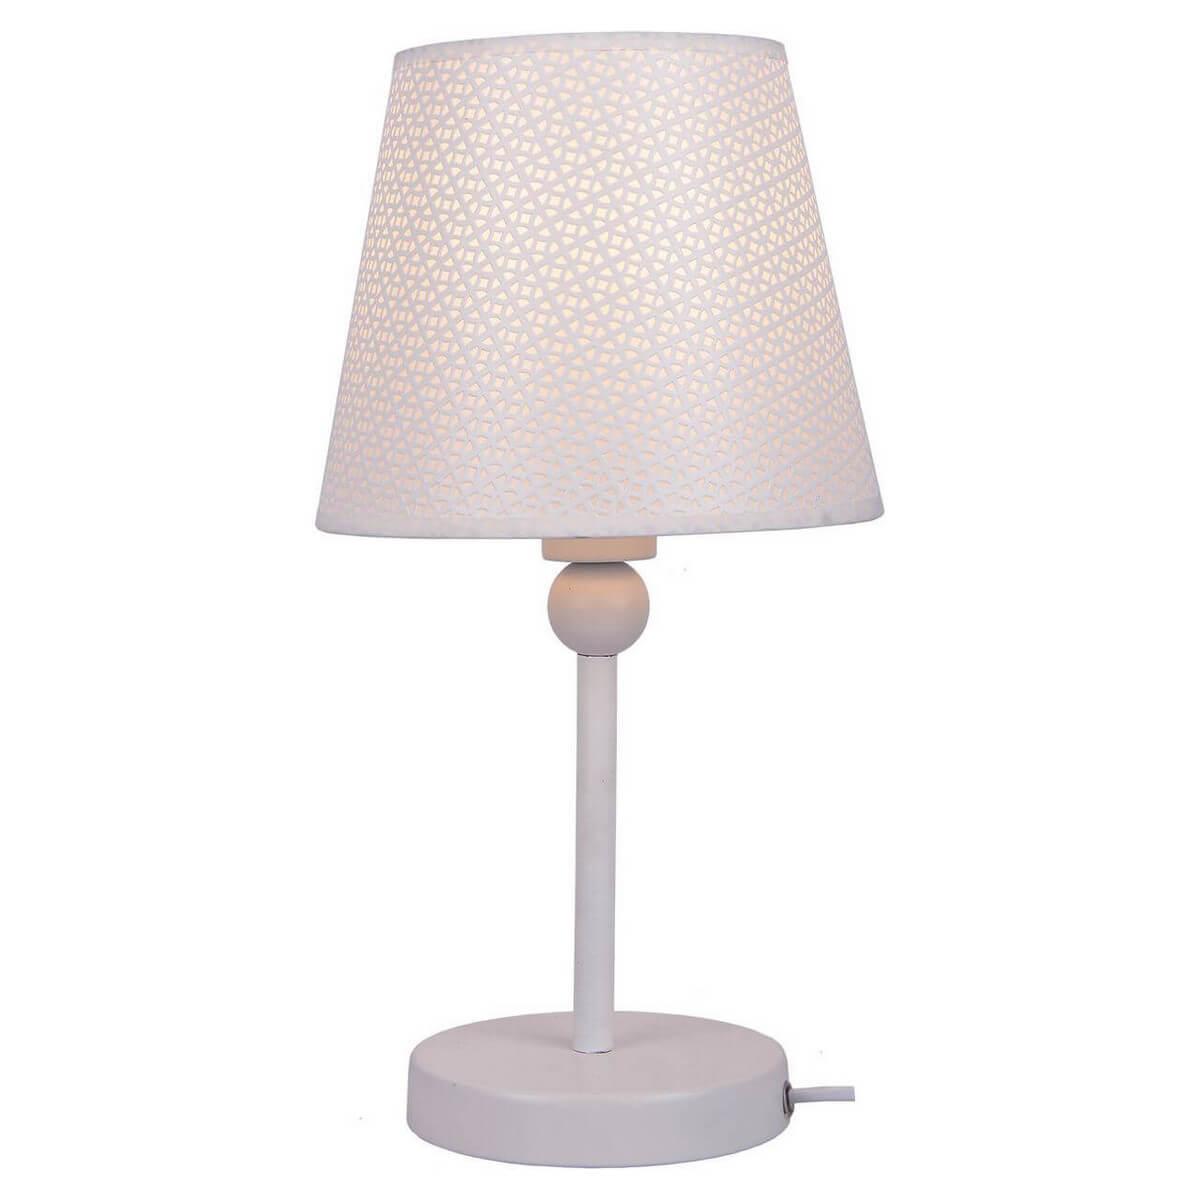 Настольная лампа Lussole Lgo LSP-0541 настольная лампа tk lighting 5571 albero white